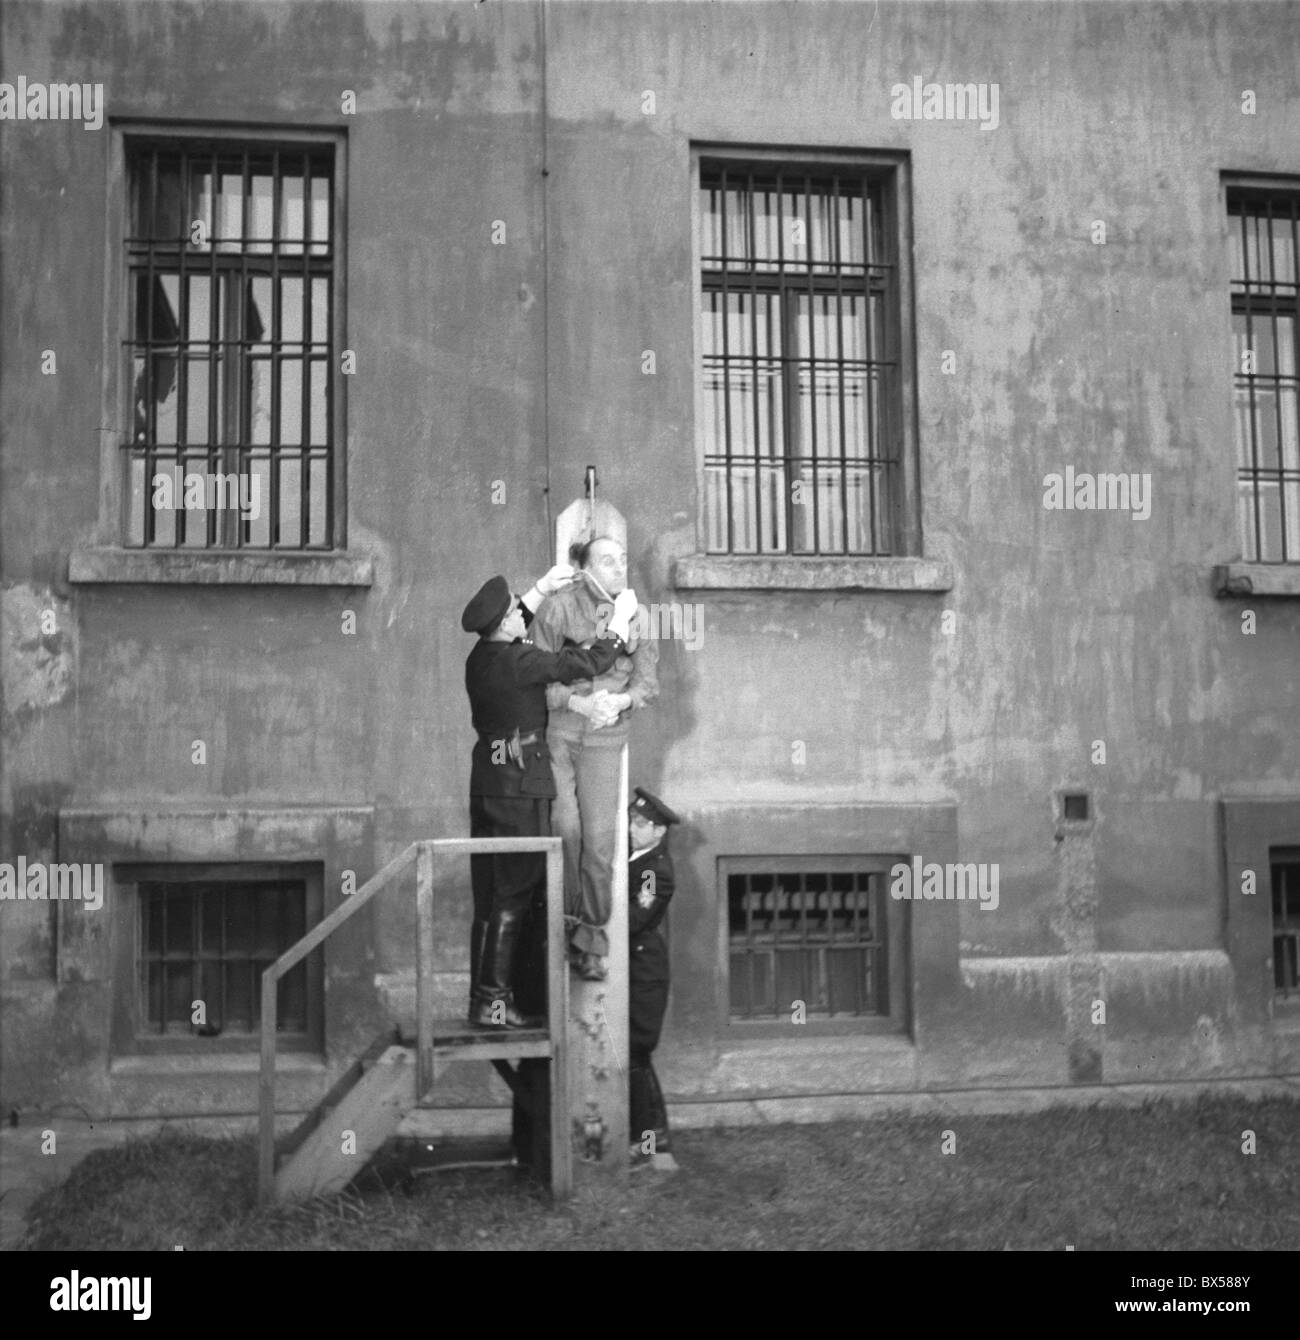 23 octobre 1946 à Prague, l'exécution publique du Général Allemand Kurt Daluege à la prison de Pankrac. CTK Photo Vintage Banque D'Images